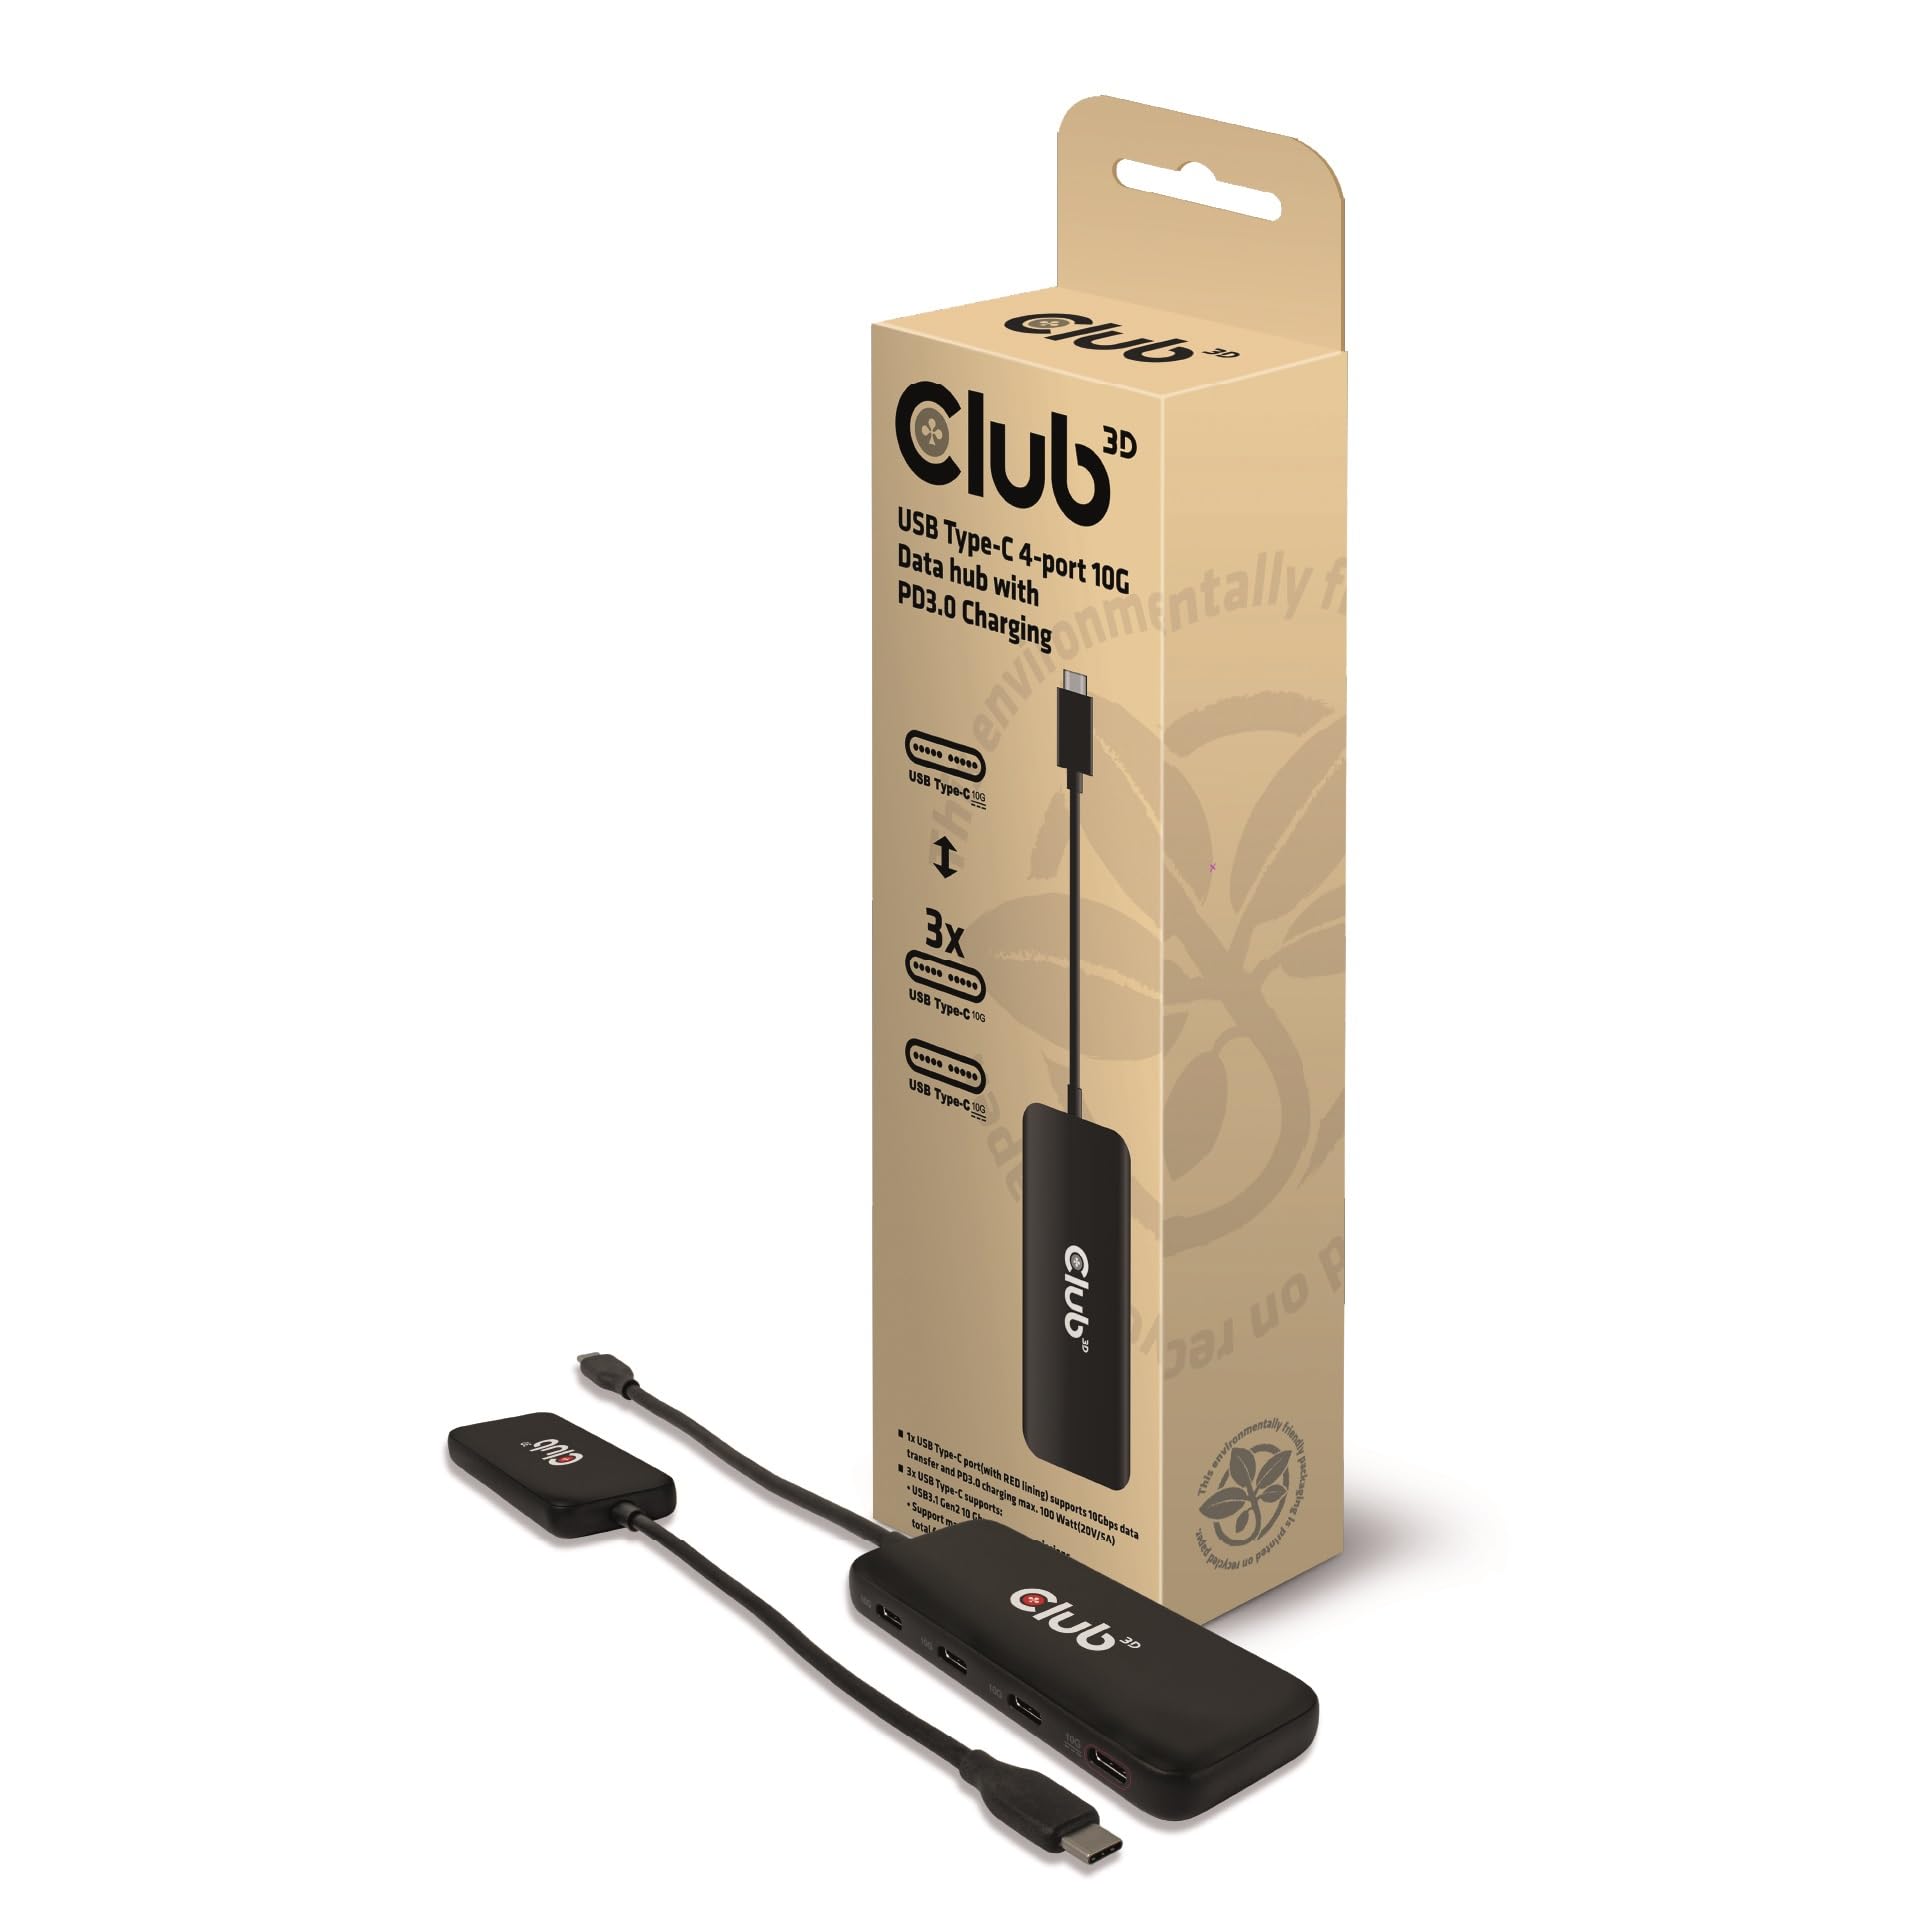 Club3D CSV-1548 USB Typ-C 4-Port 10G Daten-Hub mit PD3.0 Ladefunktion